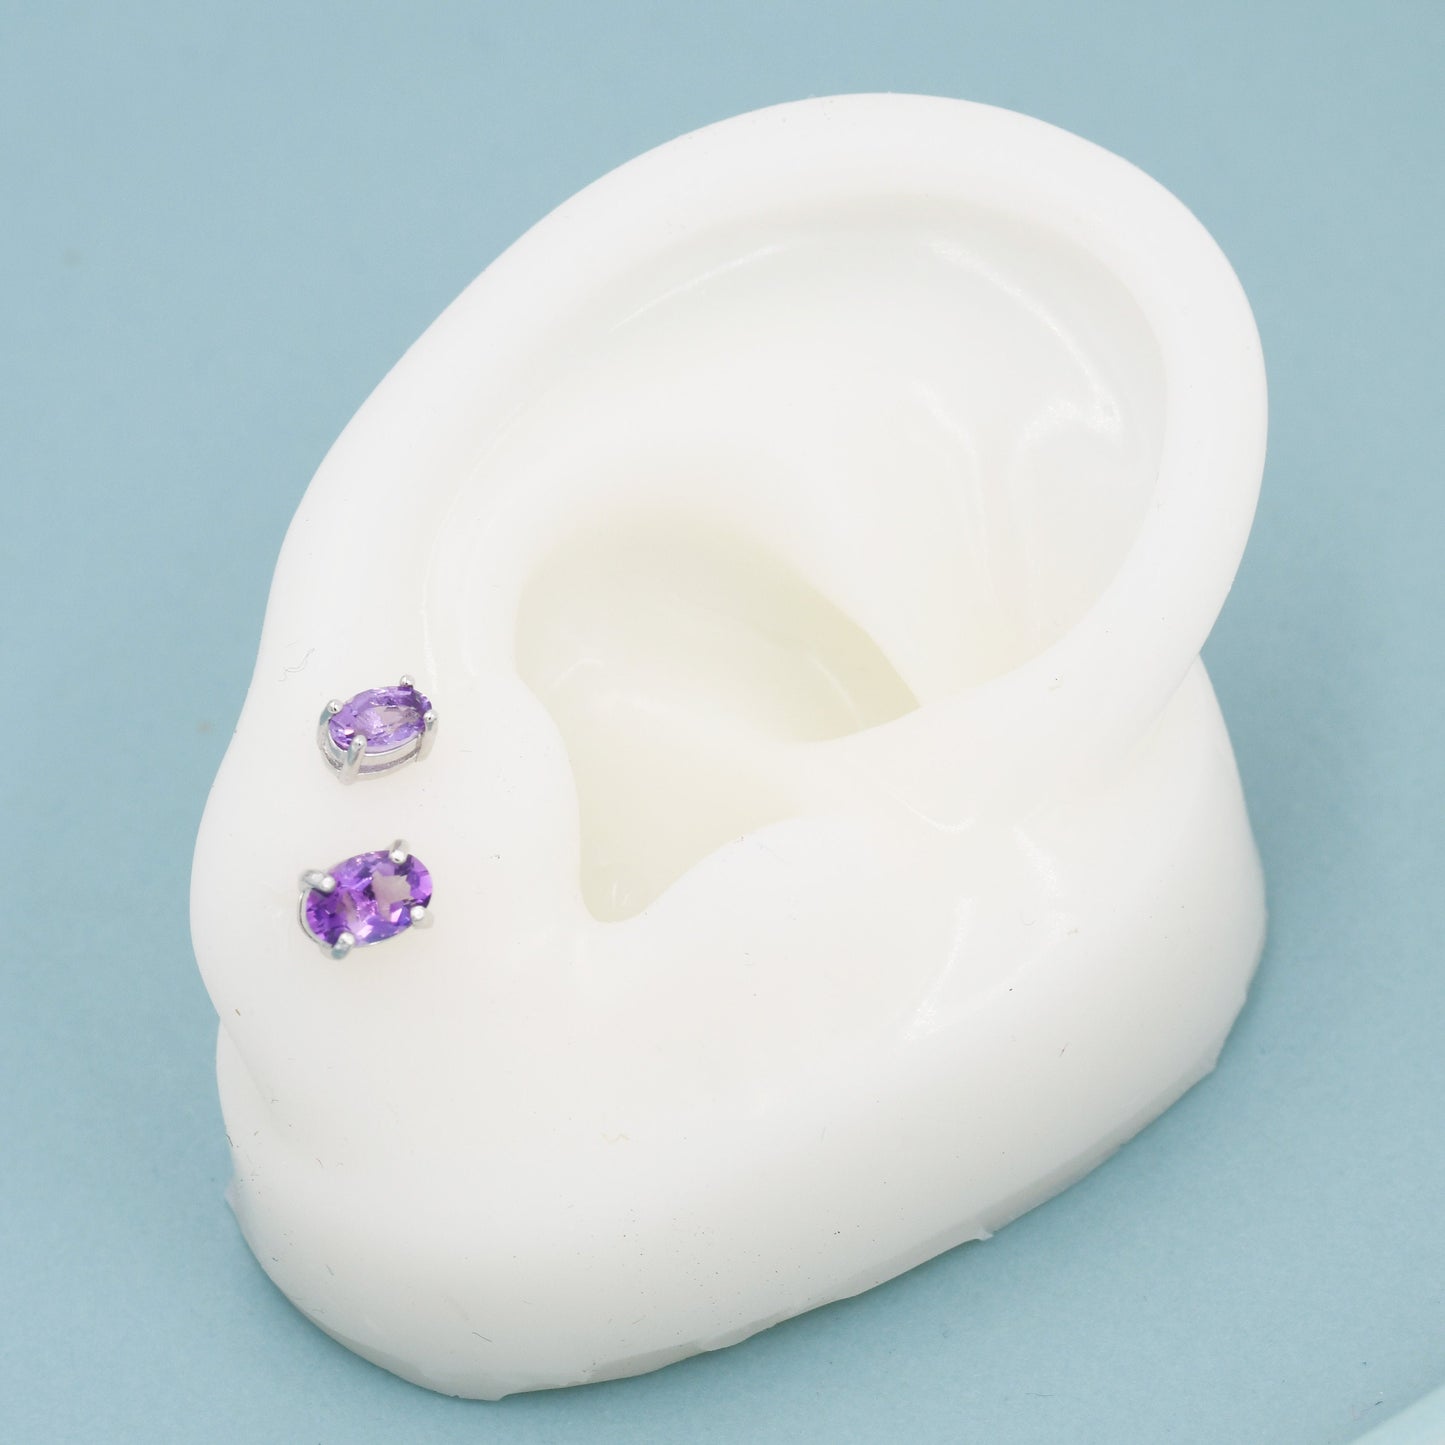 Genuine Amethyst Crystal Stud Earrings in Sterling Silver, Natural Purple Amethyst Oval Stud Earrings, February Birthstone